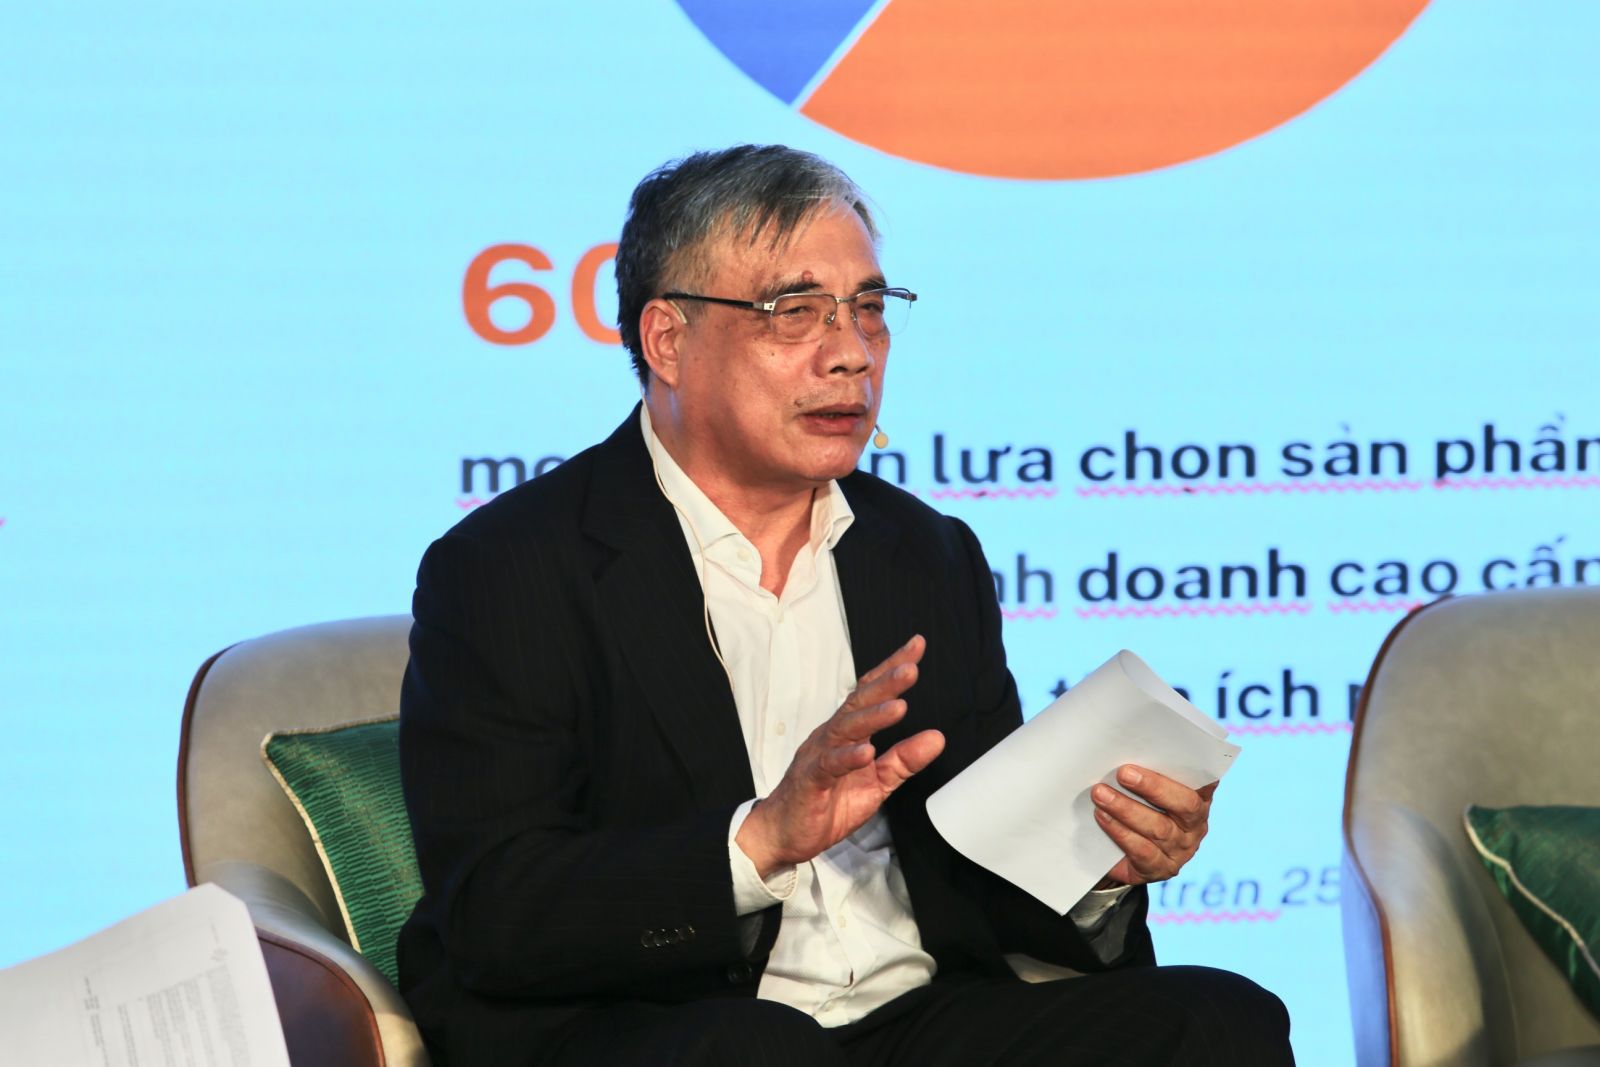 PGS. TS. Trần Đình Thiên, Thành viên Tổ tư vấn Kinh tế của Thủ tướng